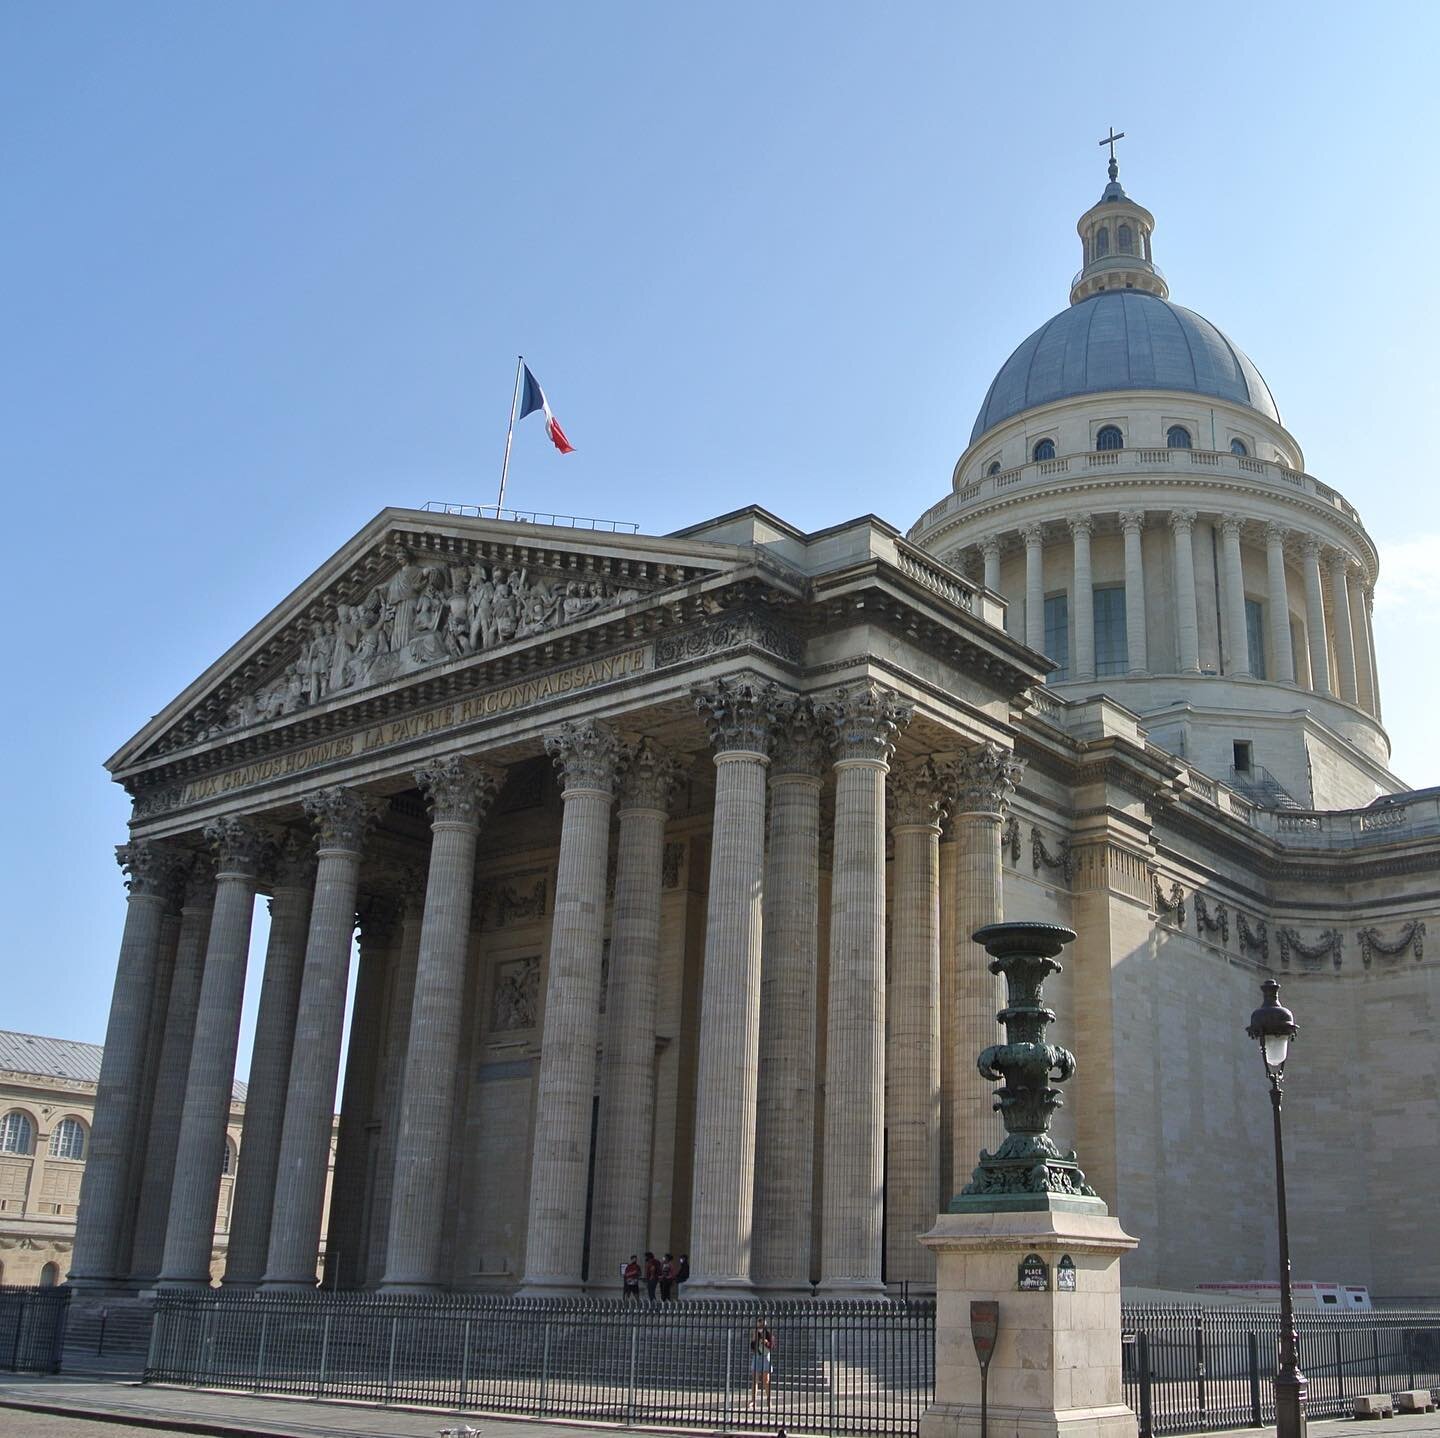 Temple-Pantheon-Rousseau-Parisology.jpg